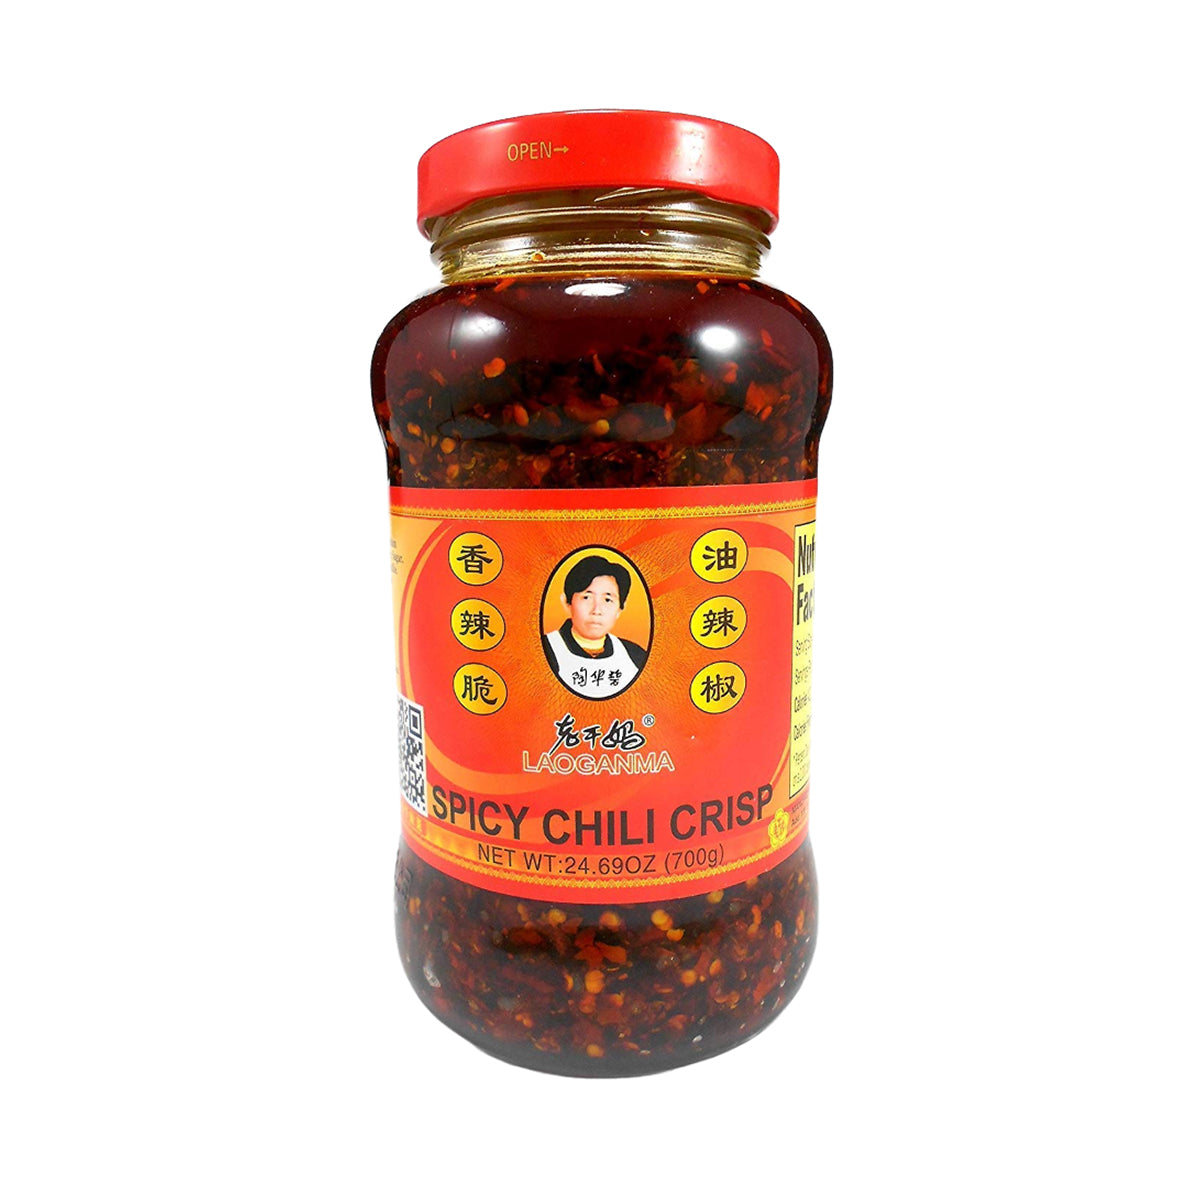 lao gan ma spicy chili crisp in jar - 7.41oz